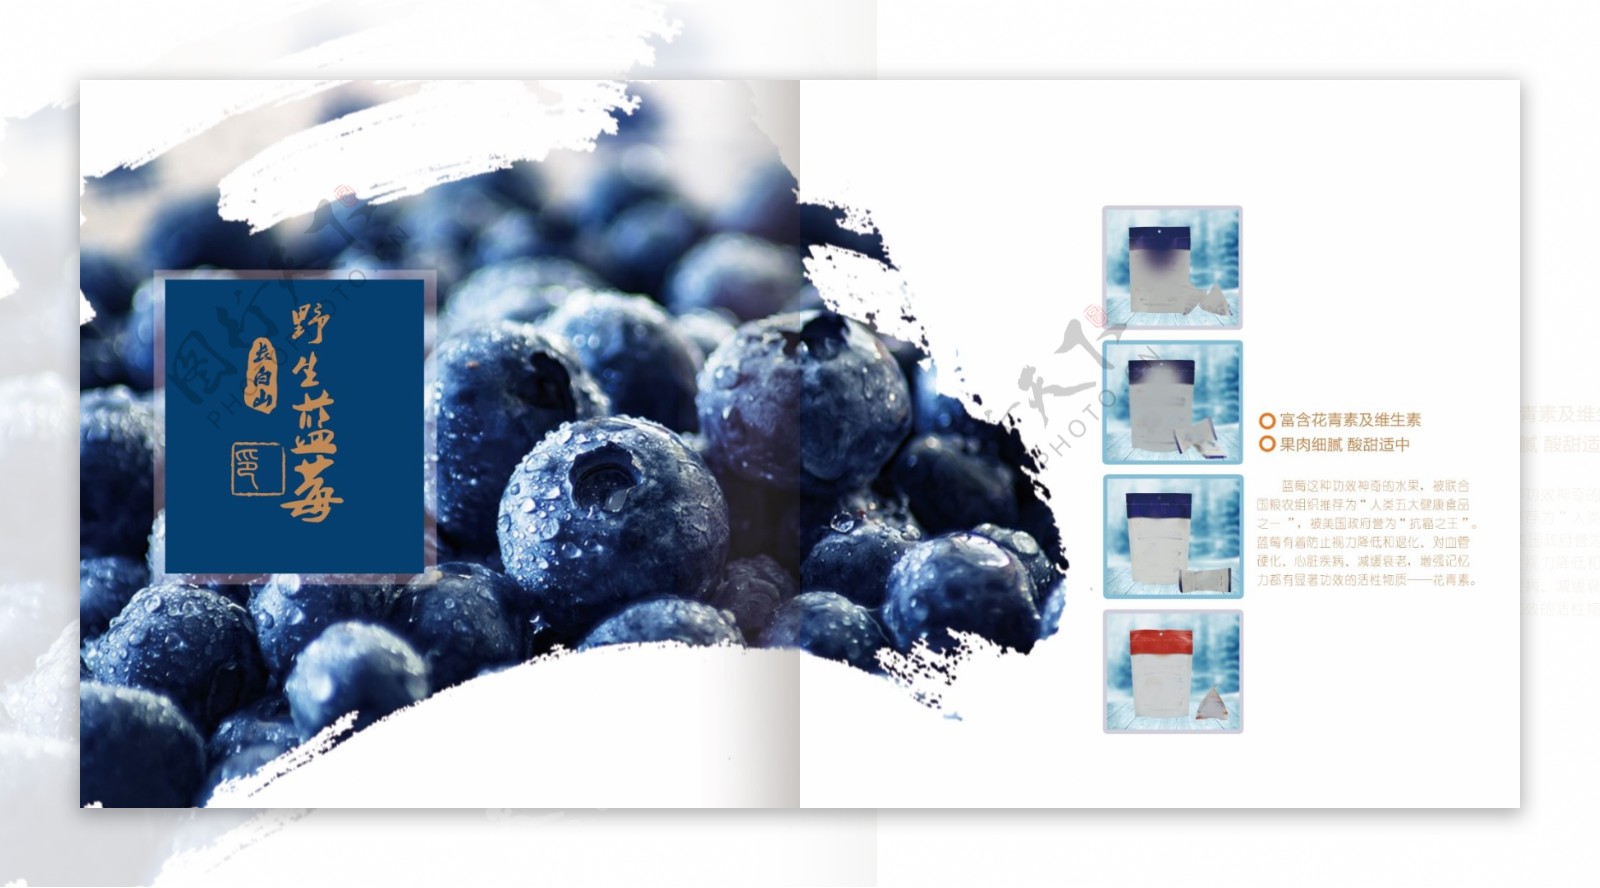 蓝莓产品画册单页